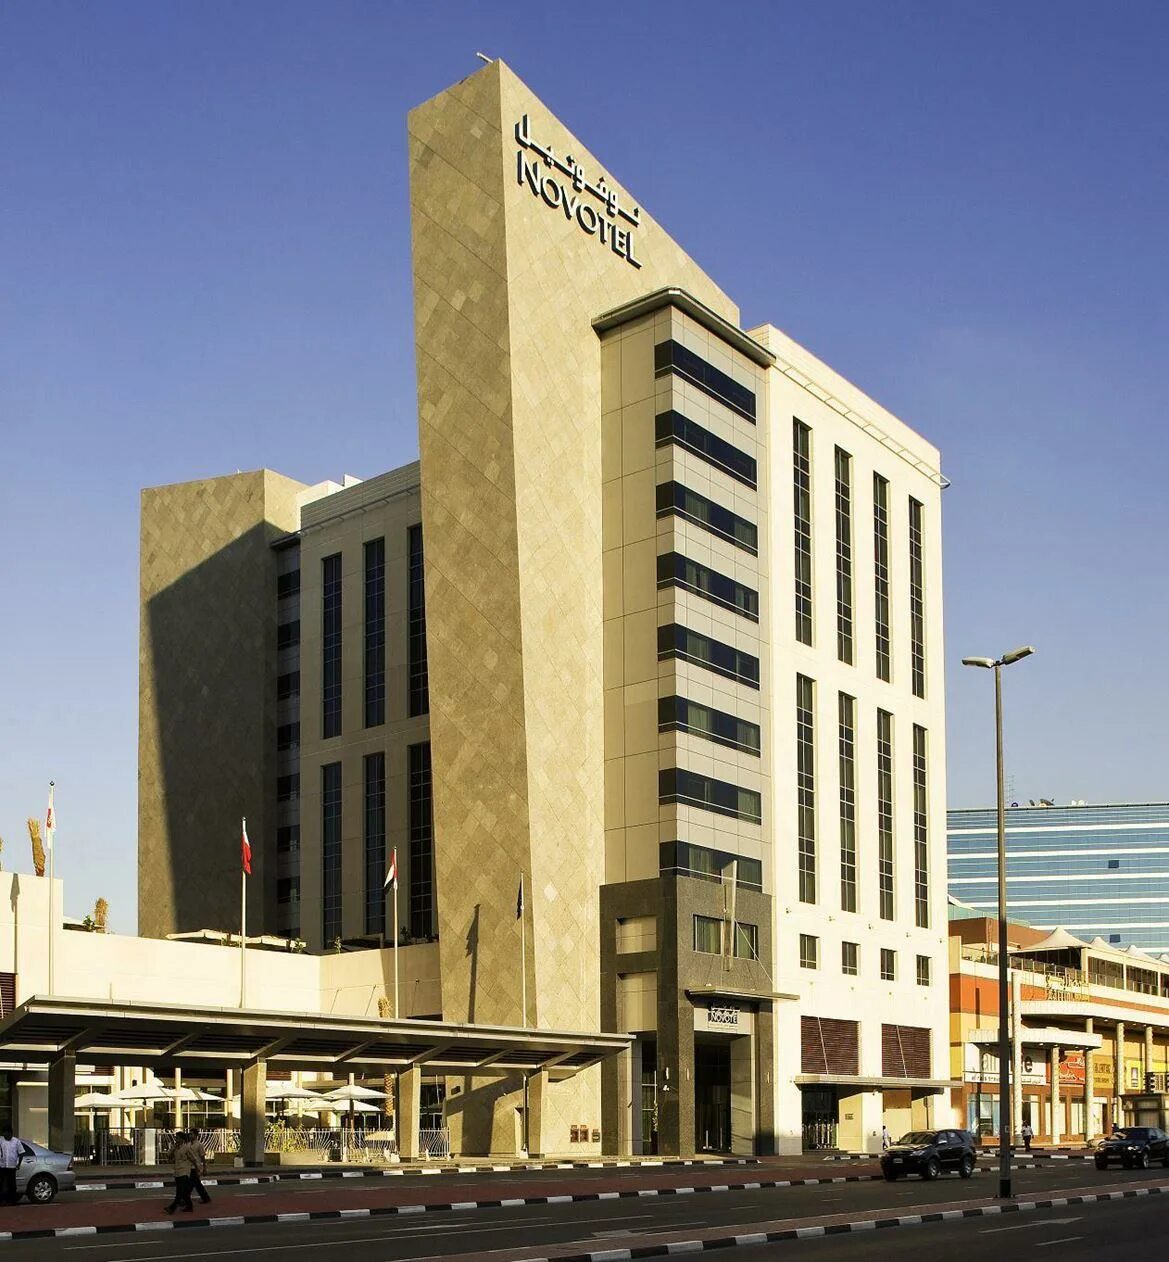 City центр Дейра Дубай. Novotel Deira City Center Hotel Dubai. Novotel Deira City Centre 4*. "Deira City Center" (ОАЭ, Дубай).